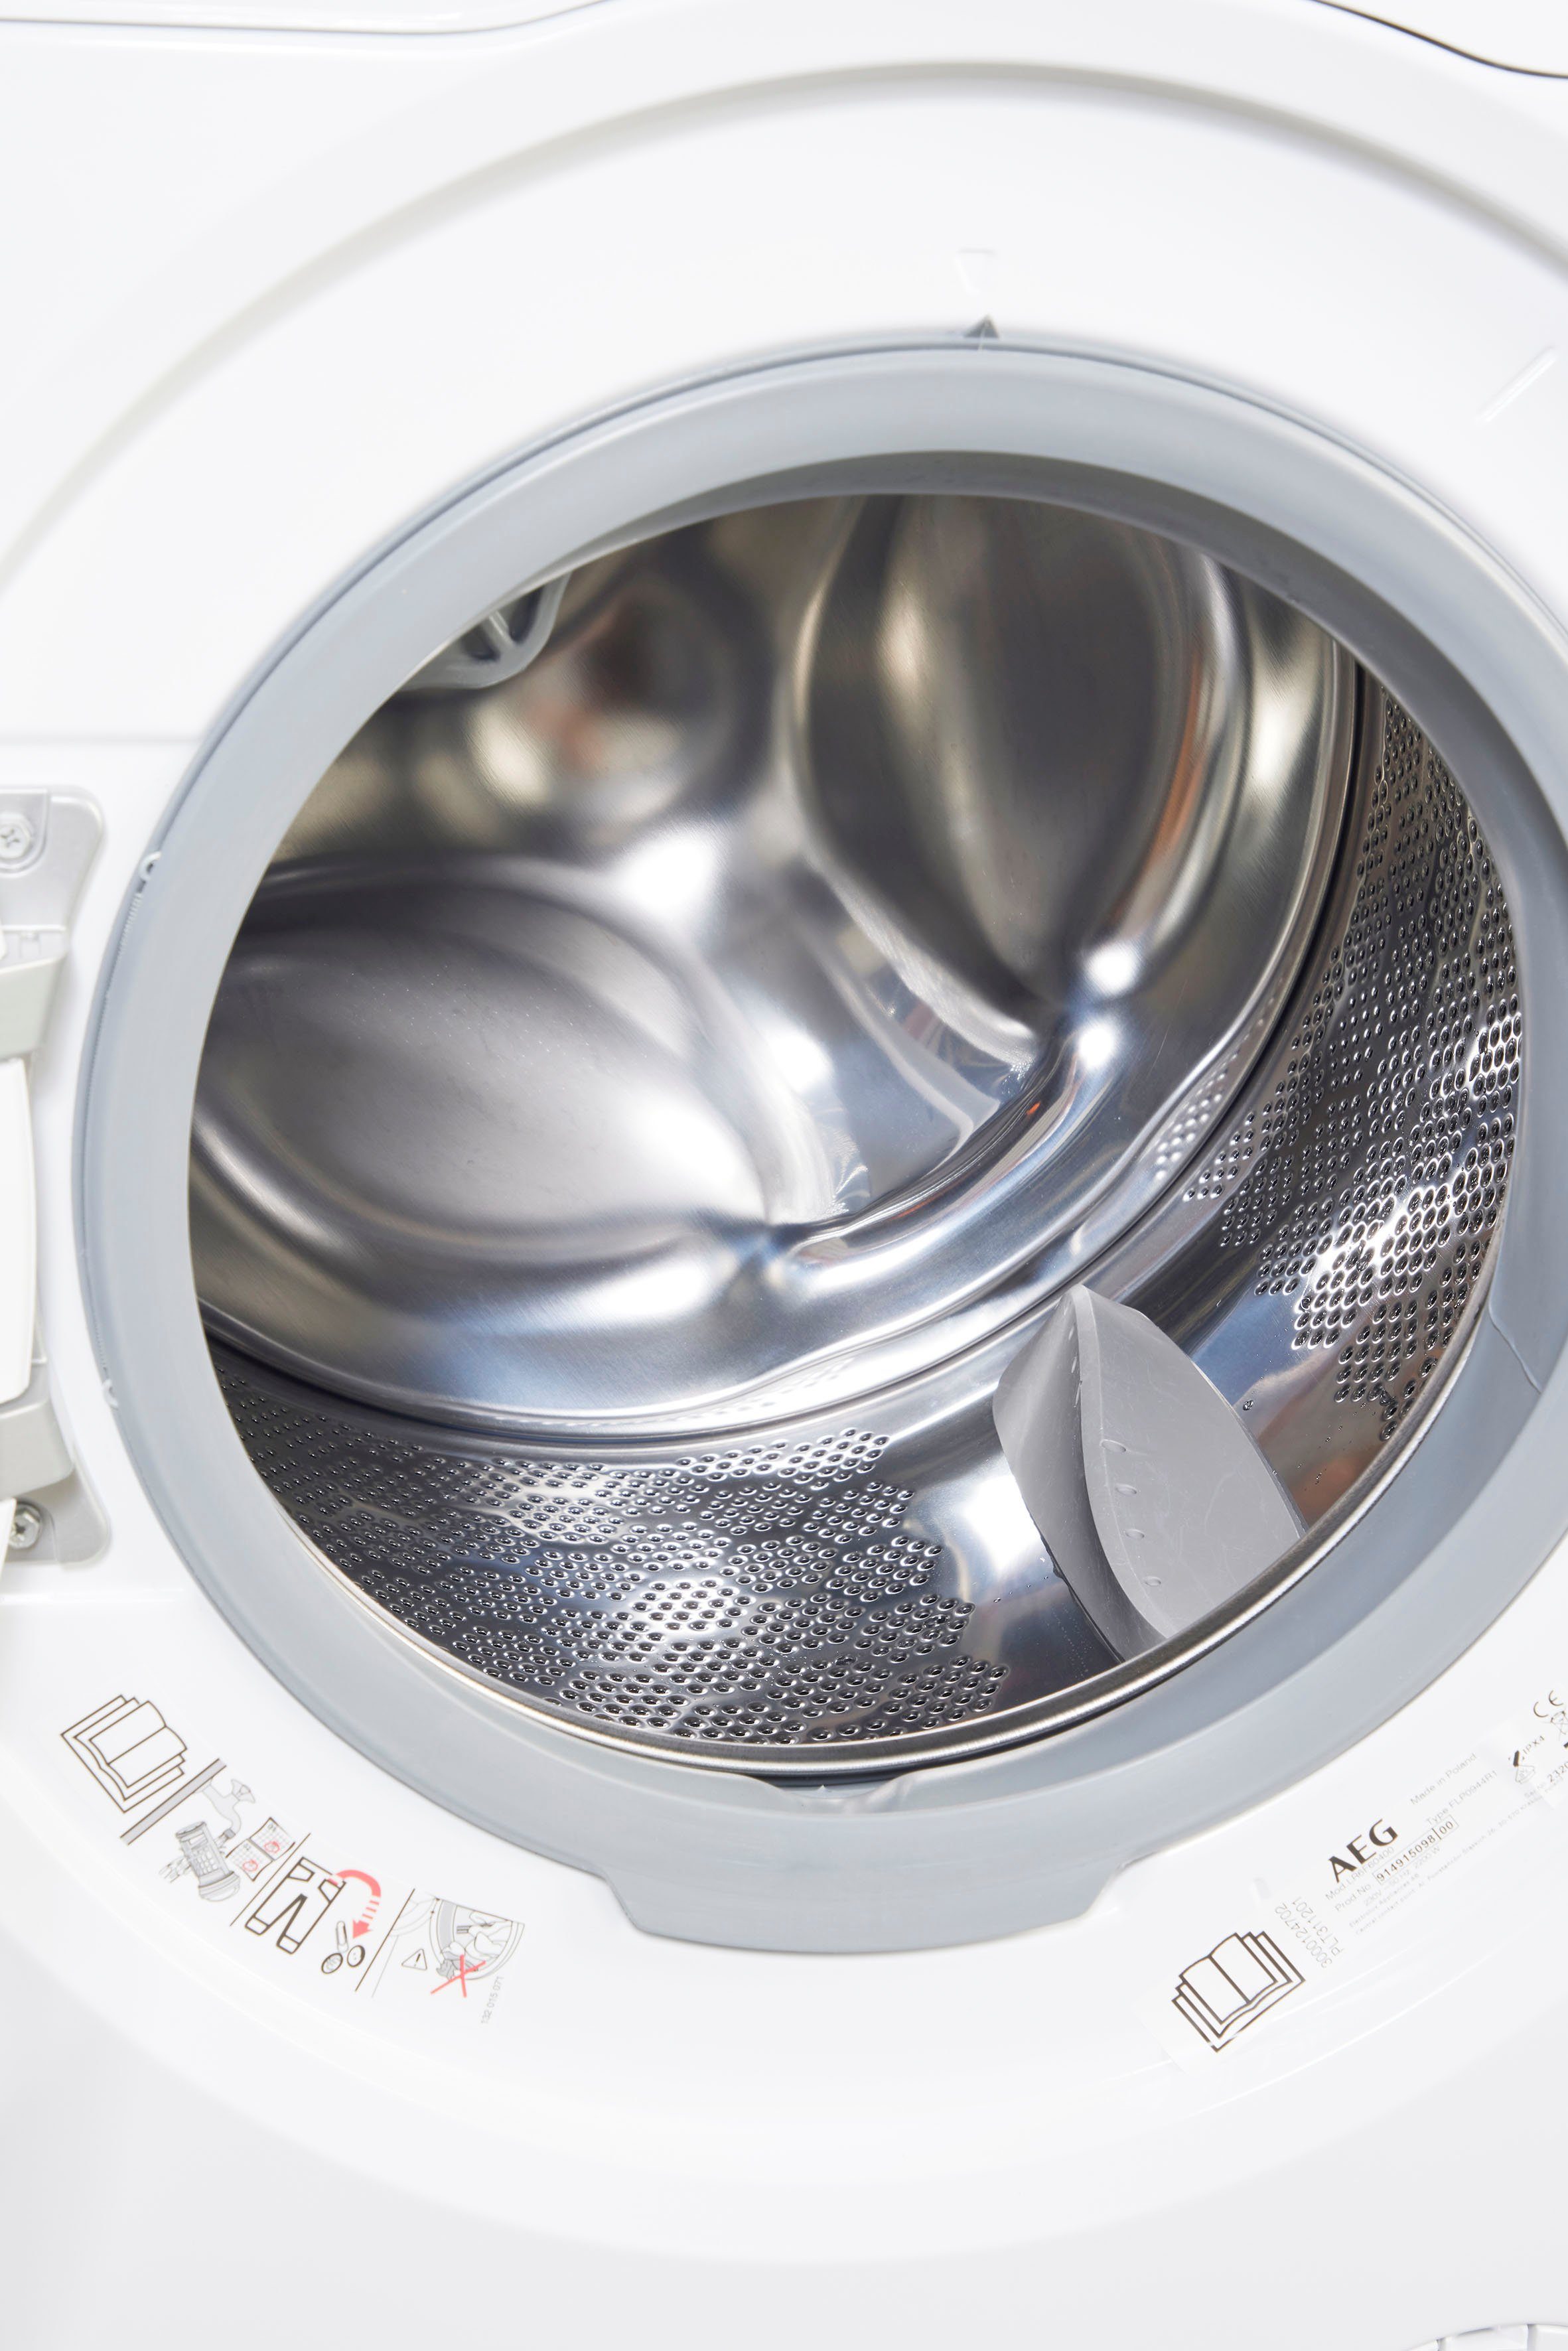 AEG Waschmaschine 40% und LR6F60400, 10 spart Mengenautomatik​ Wasser 6000 - kg, ProSense® Energie Zeit, bis U/min, 1400